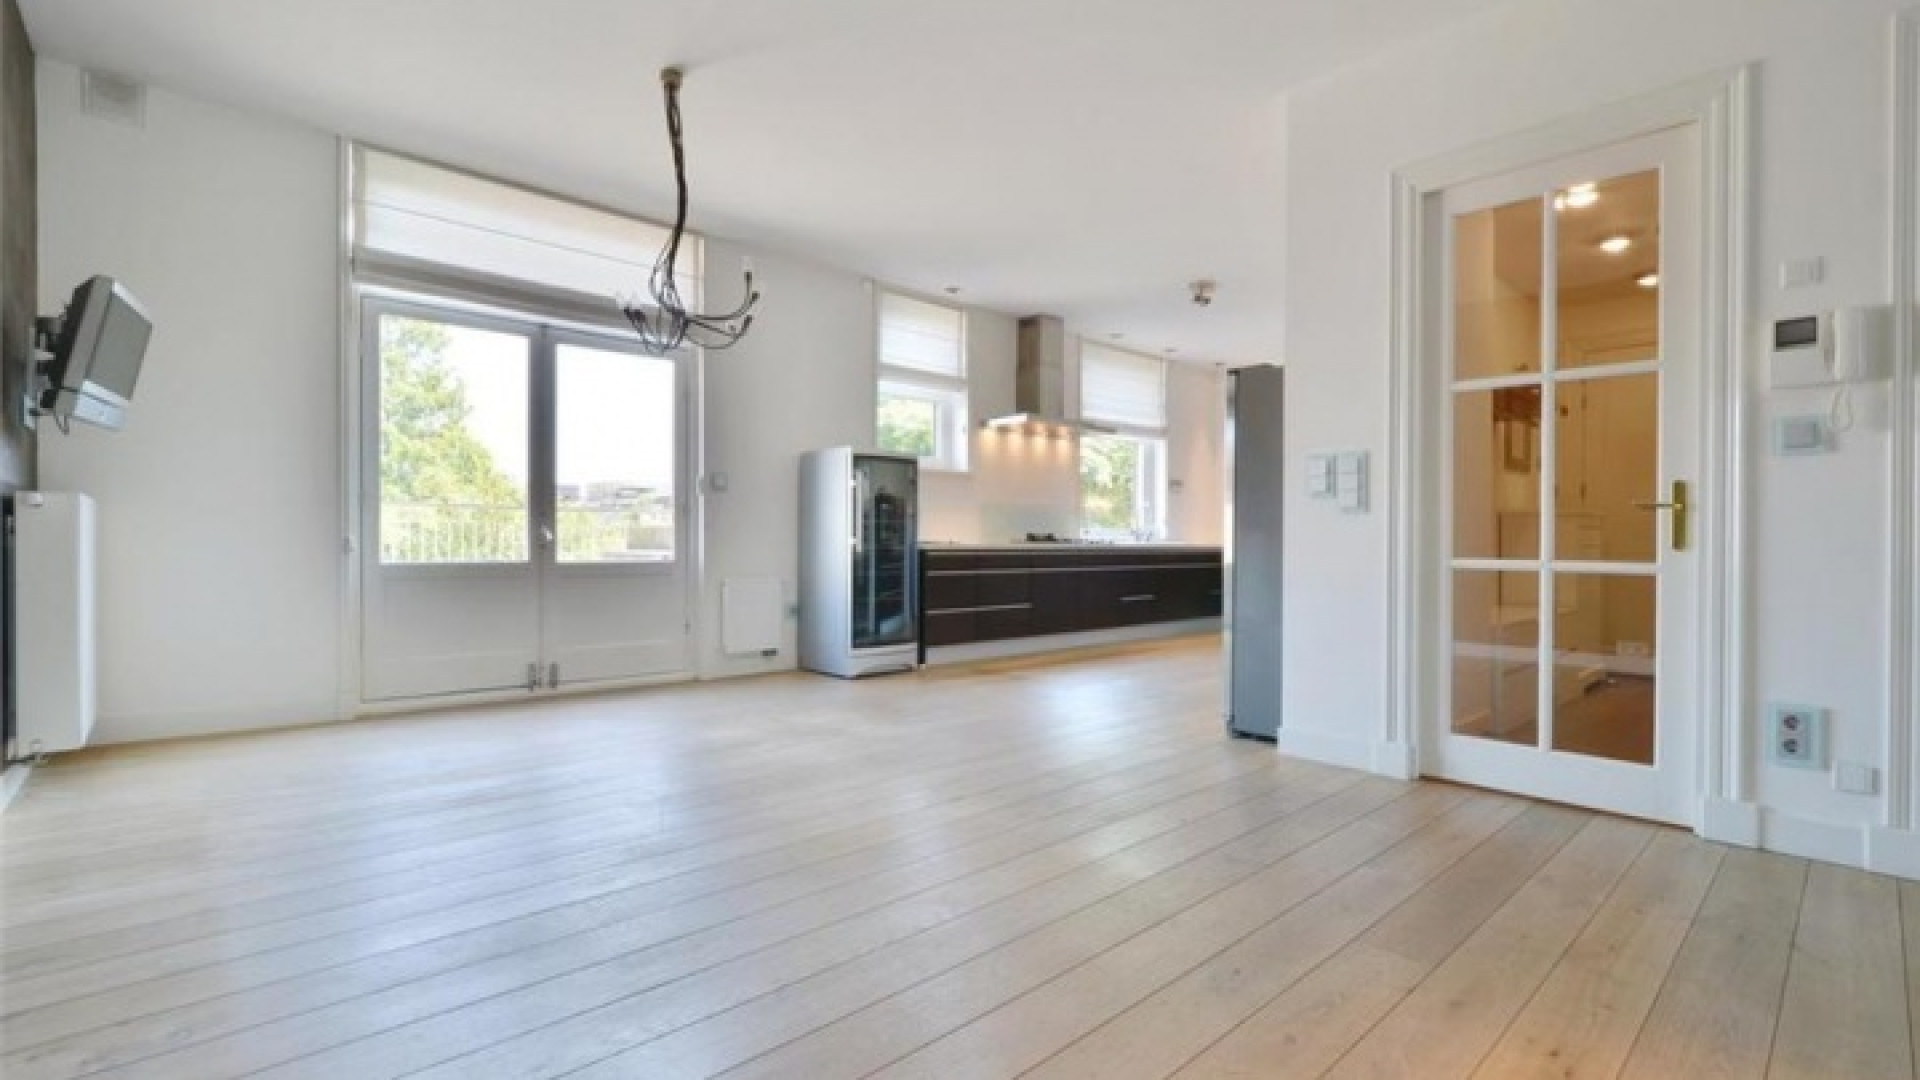 Frank Rijkaard zet zijn zeer luxe huis in Amsterdam Zuid te koop. Zie foto's 8